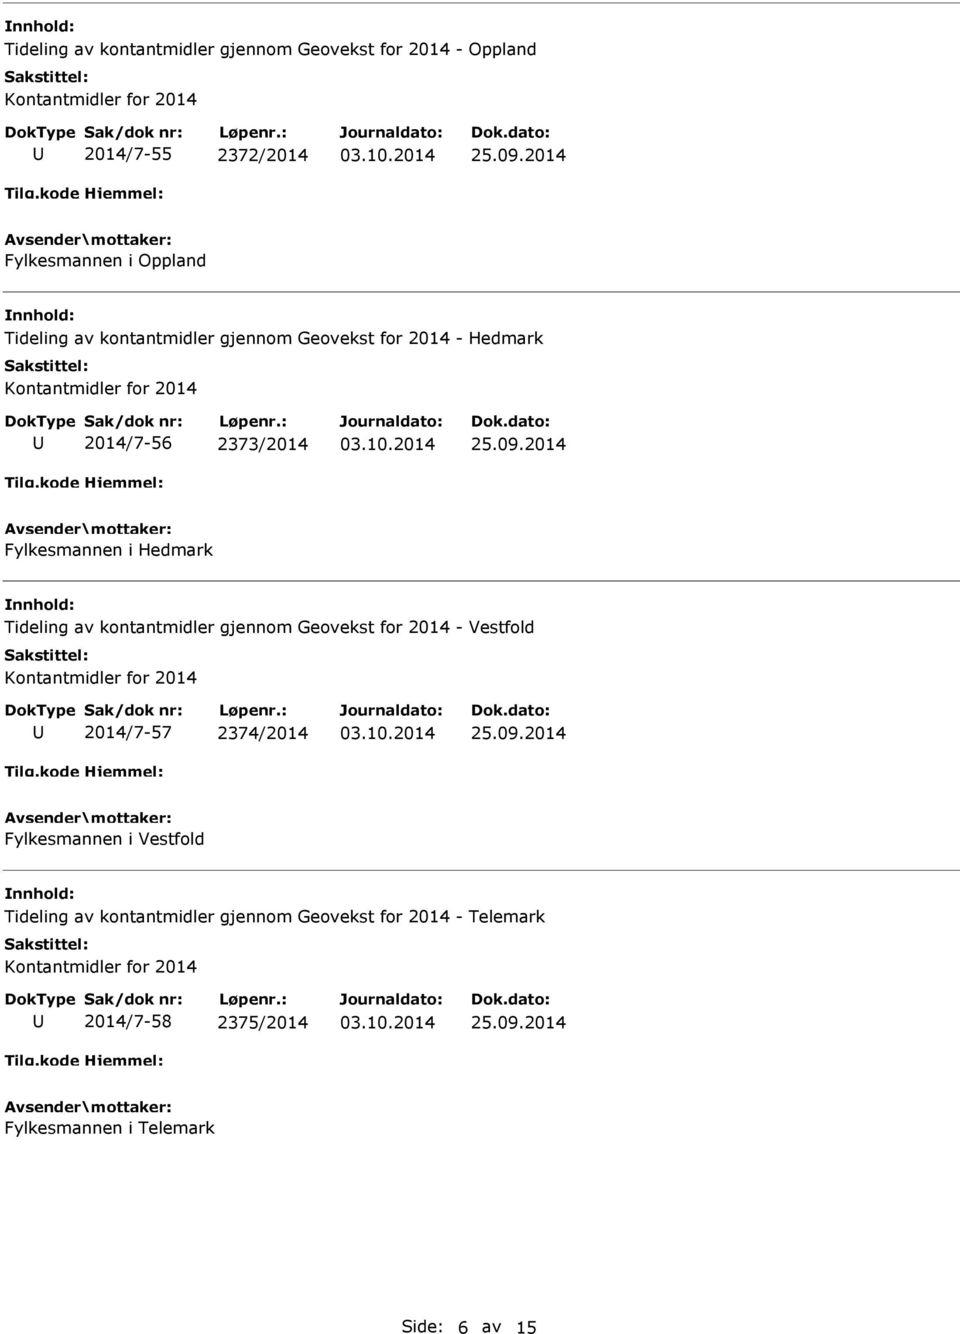 Tideling av kontantmidler gjennom Geovekst for 2014 - Vestfold 2014/7-57 2374/2014 Fylkesmannen i Vestfold